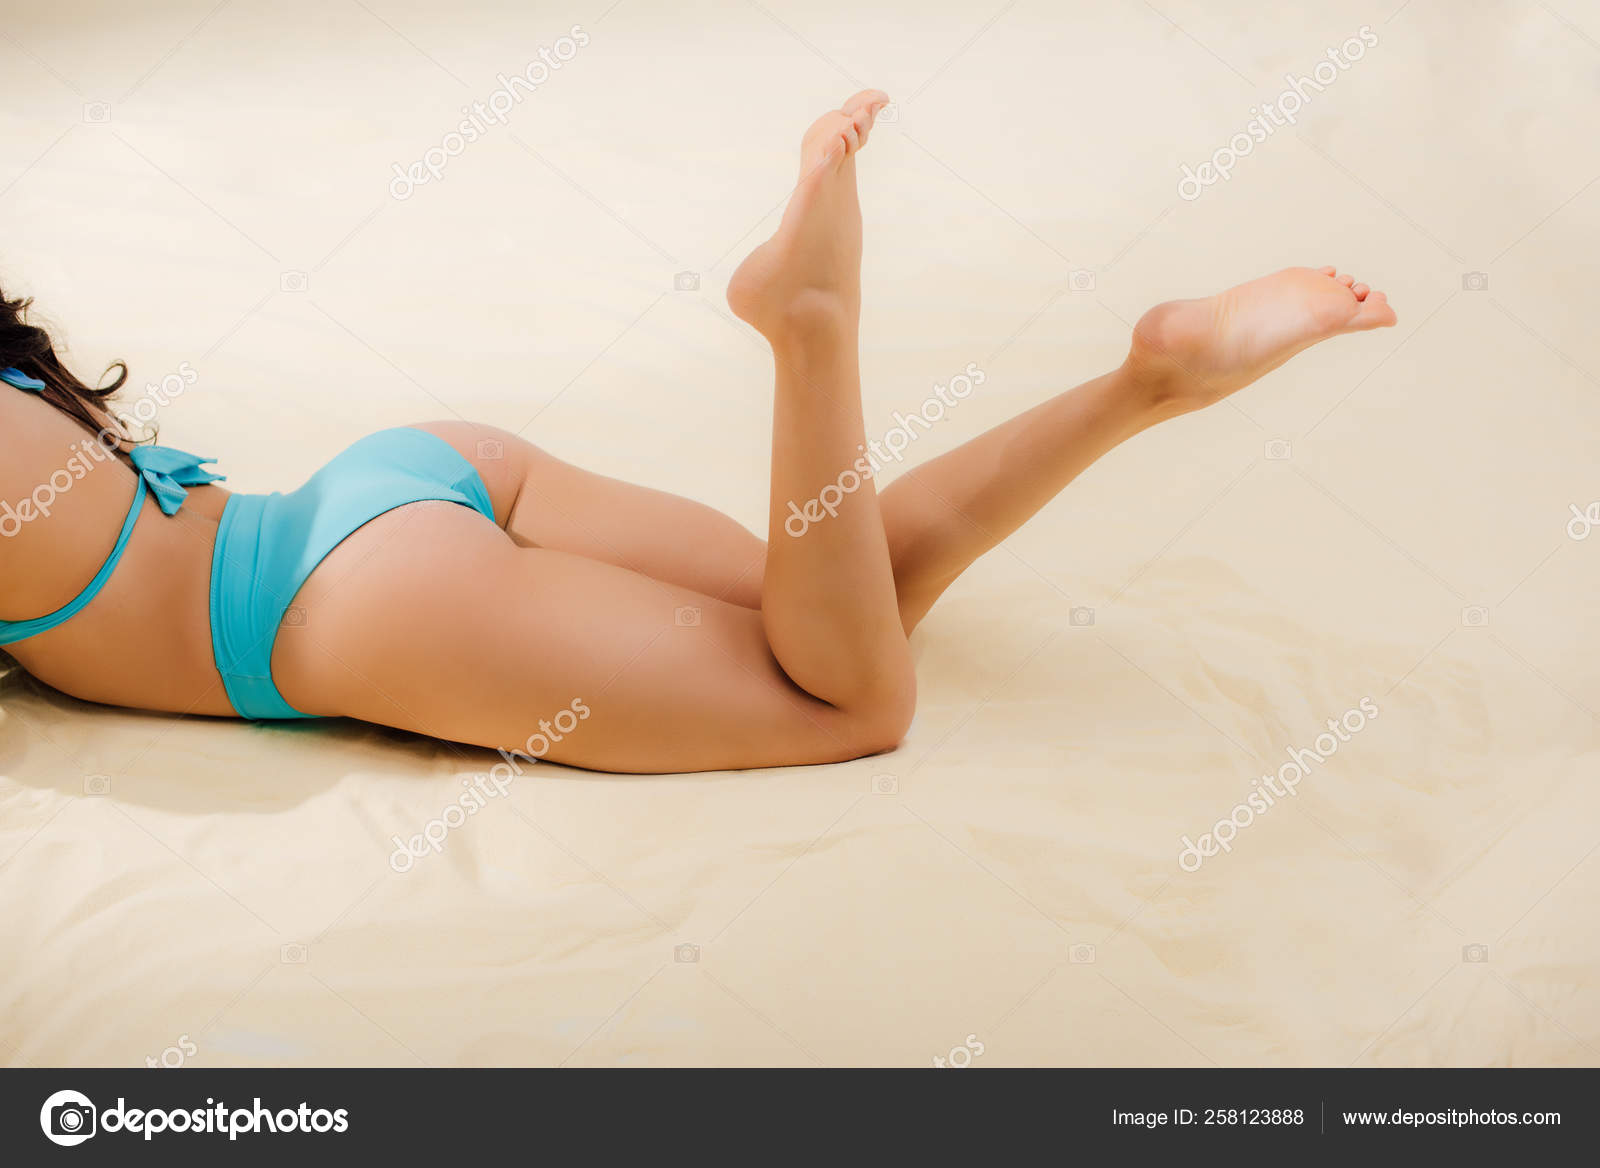 Зрелая женщина в купальнике лежит на пляже и отдыхает попав под камеру